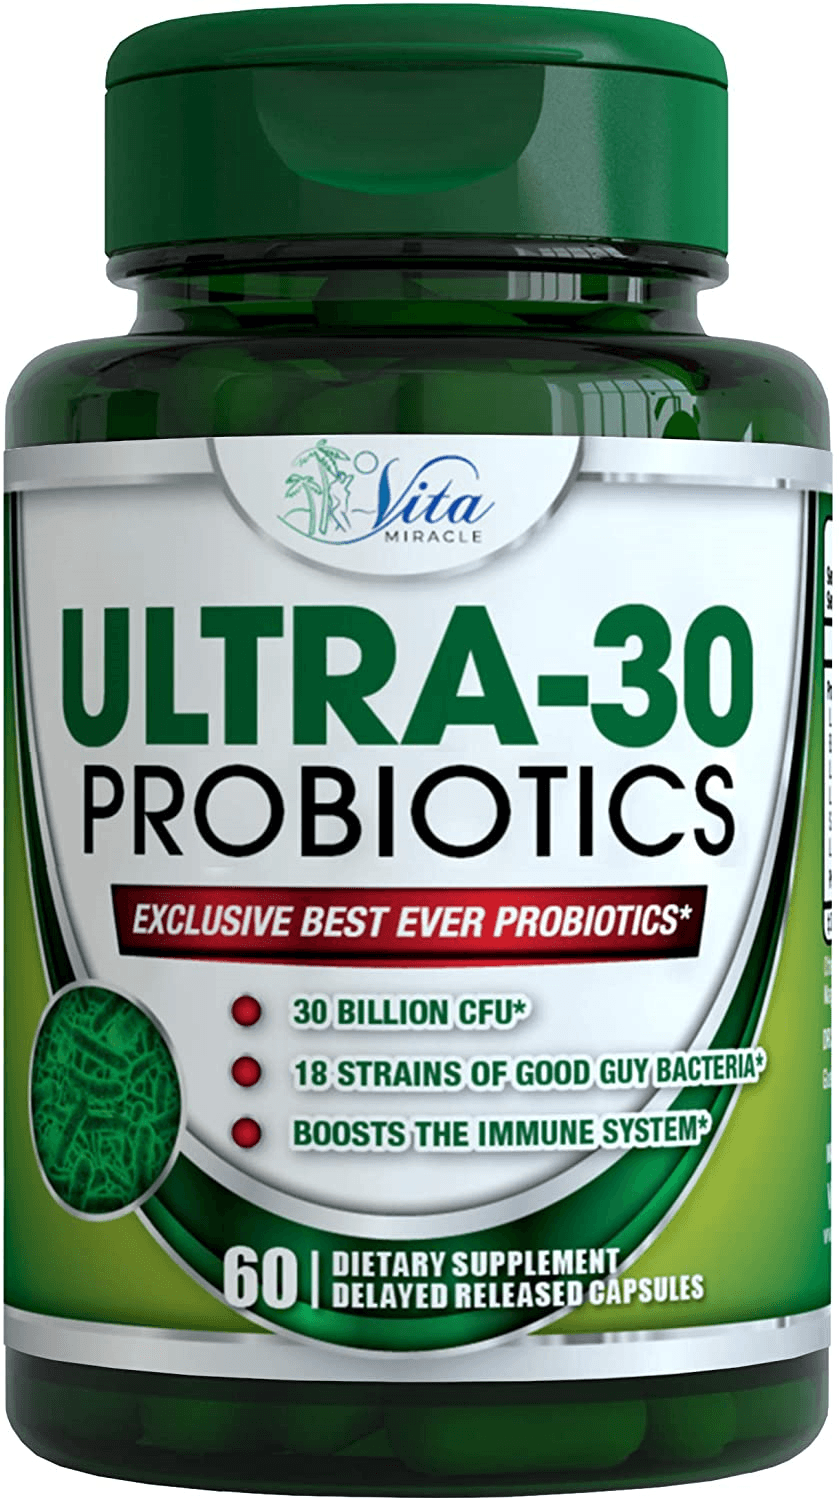 Ultra 30 Probiotics